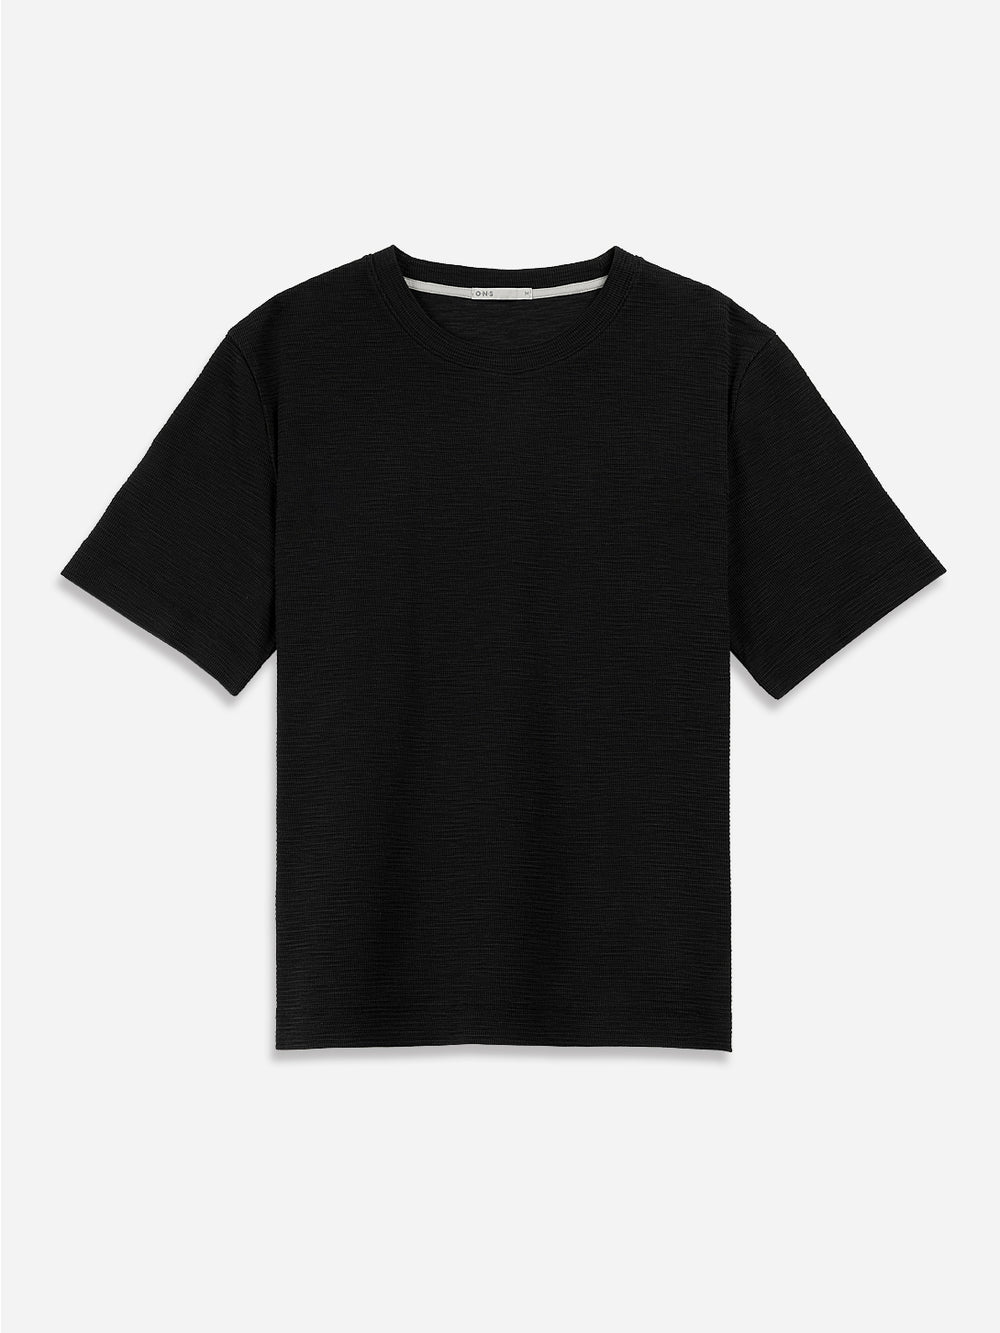 BLACK Baseile Waffle Tee Mens Summer Lightweight Short Sleeve Shirt 